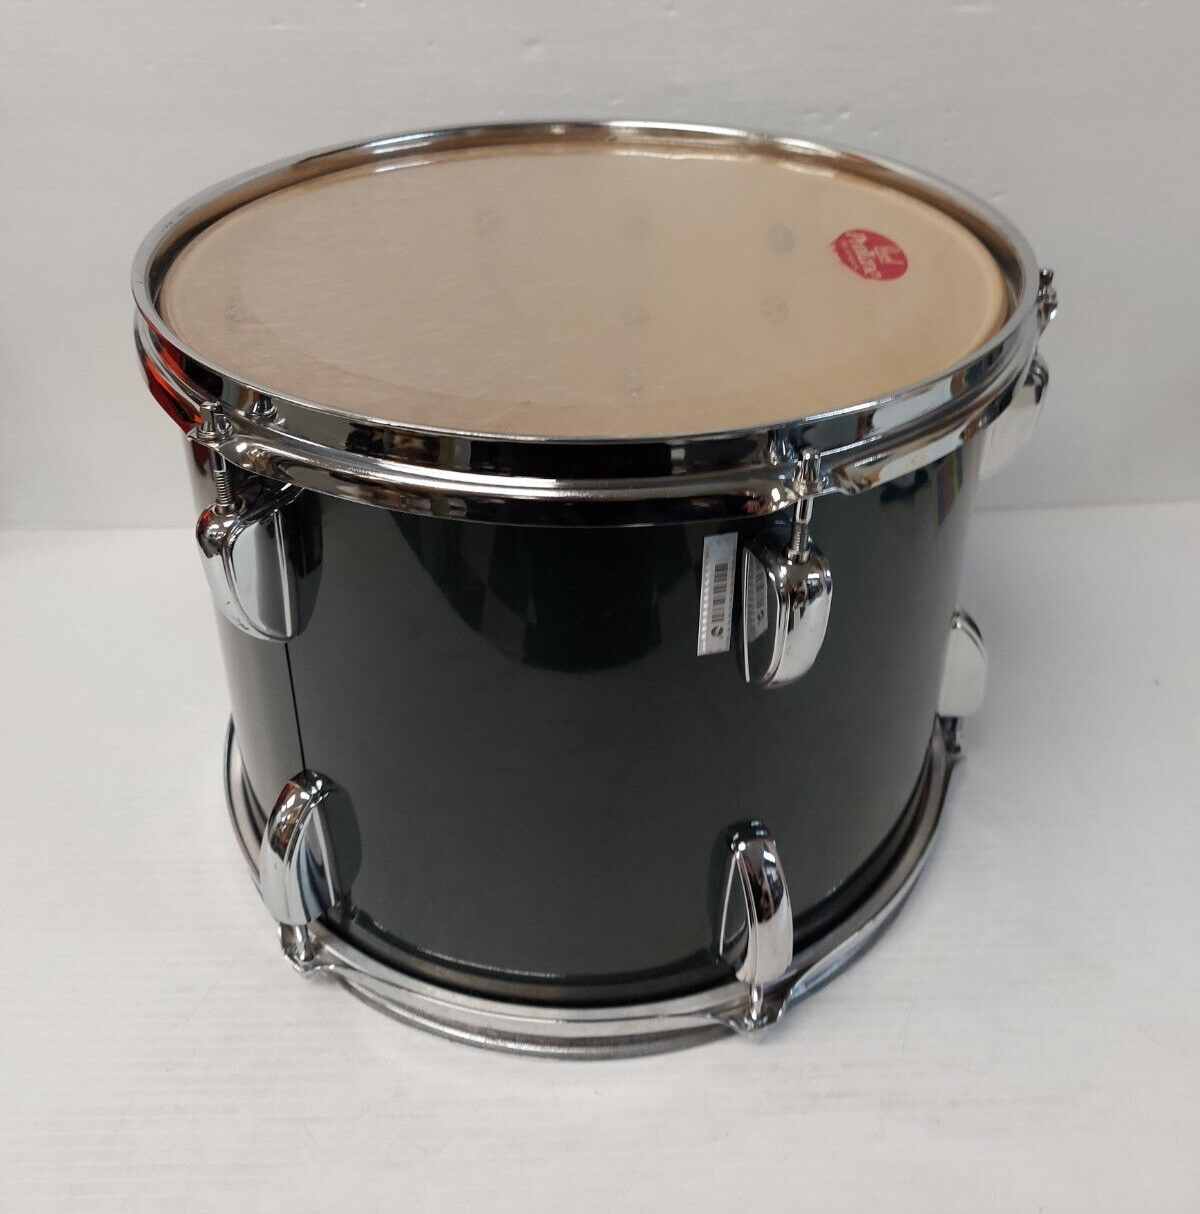 (NI-20330) Tama Swingstar Snare Drum